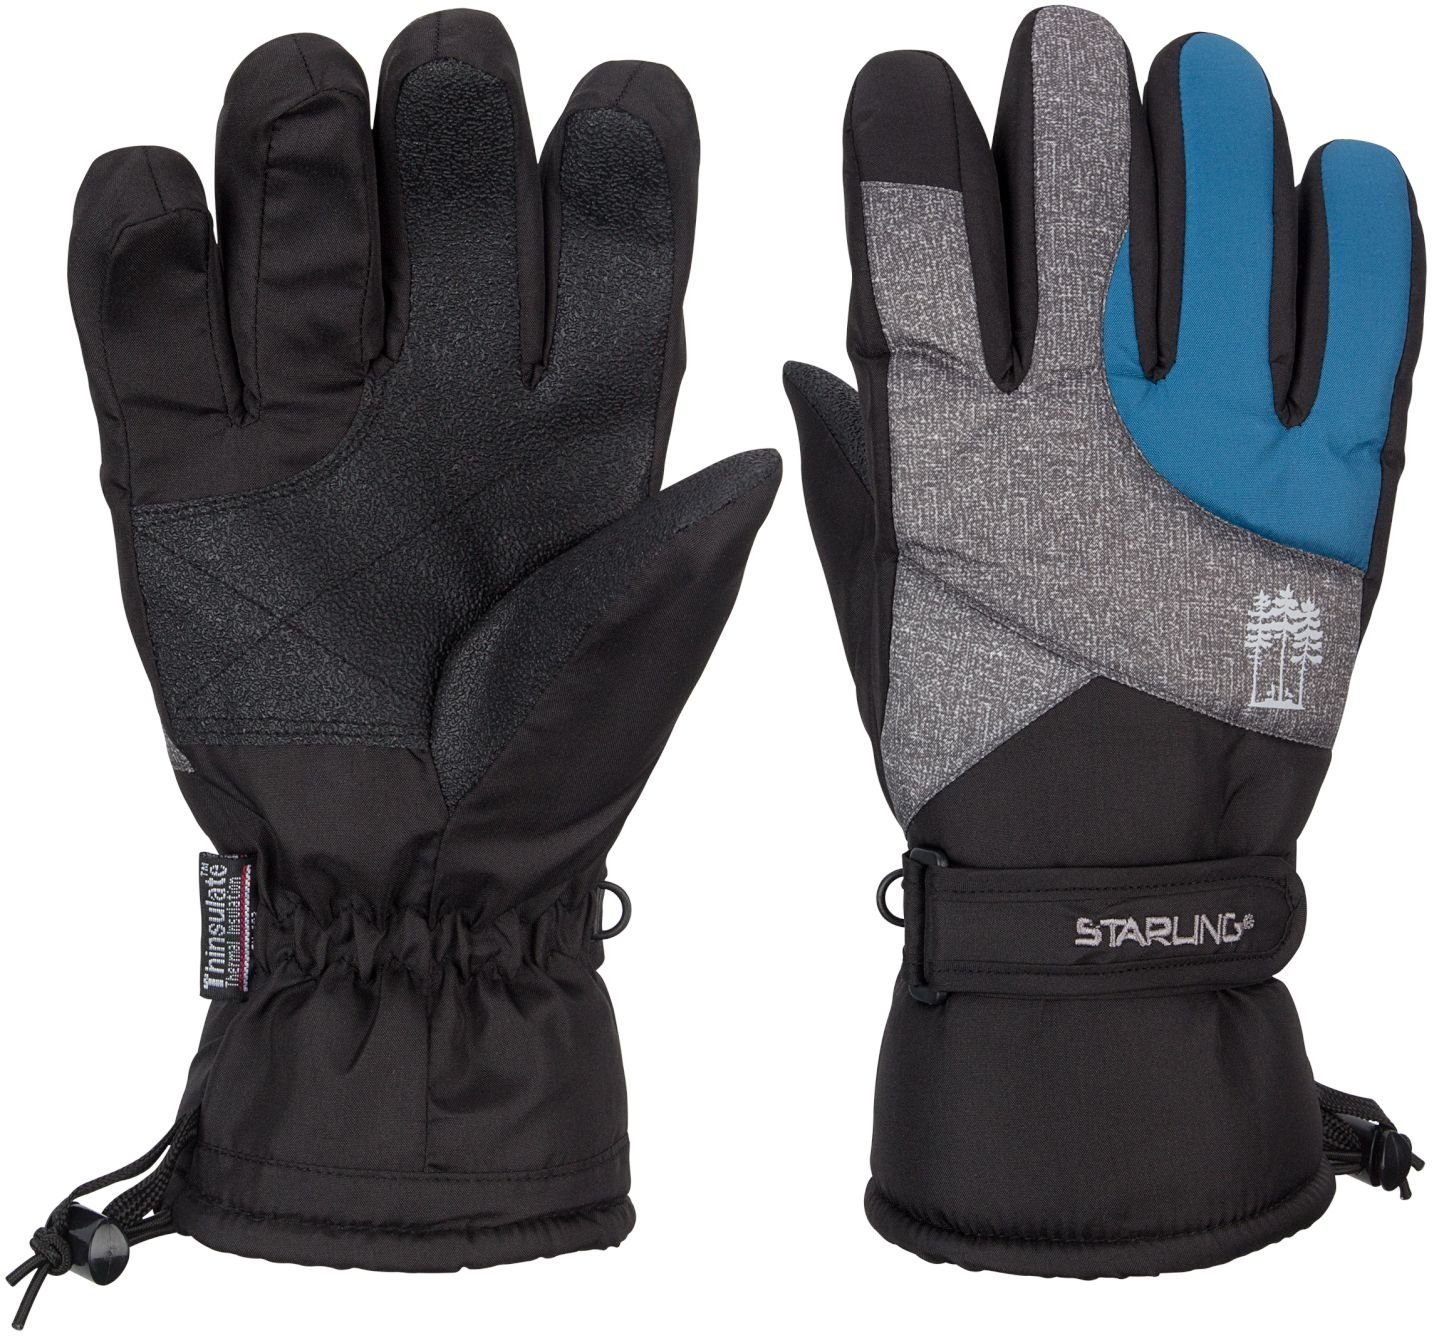 HERREN WINTER HANDSCHUHE Ski-Handschuhe Thinsulate® Wärmeisolation schwarz/blau 